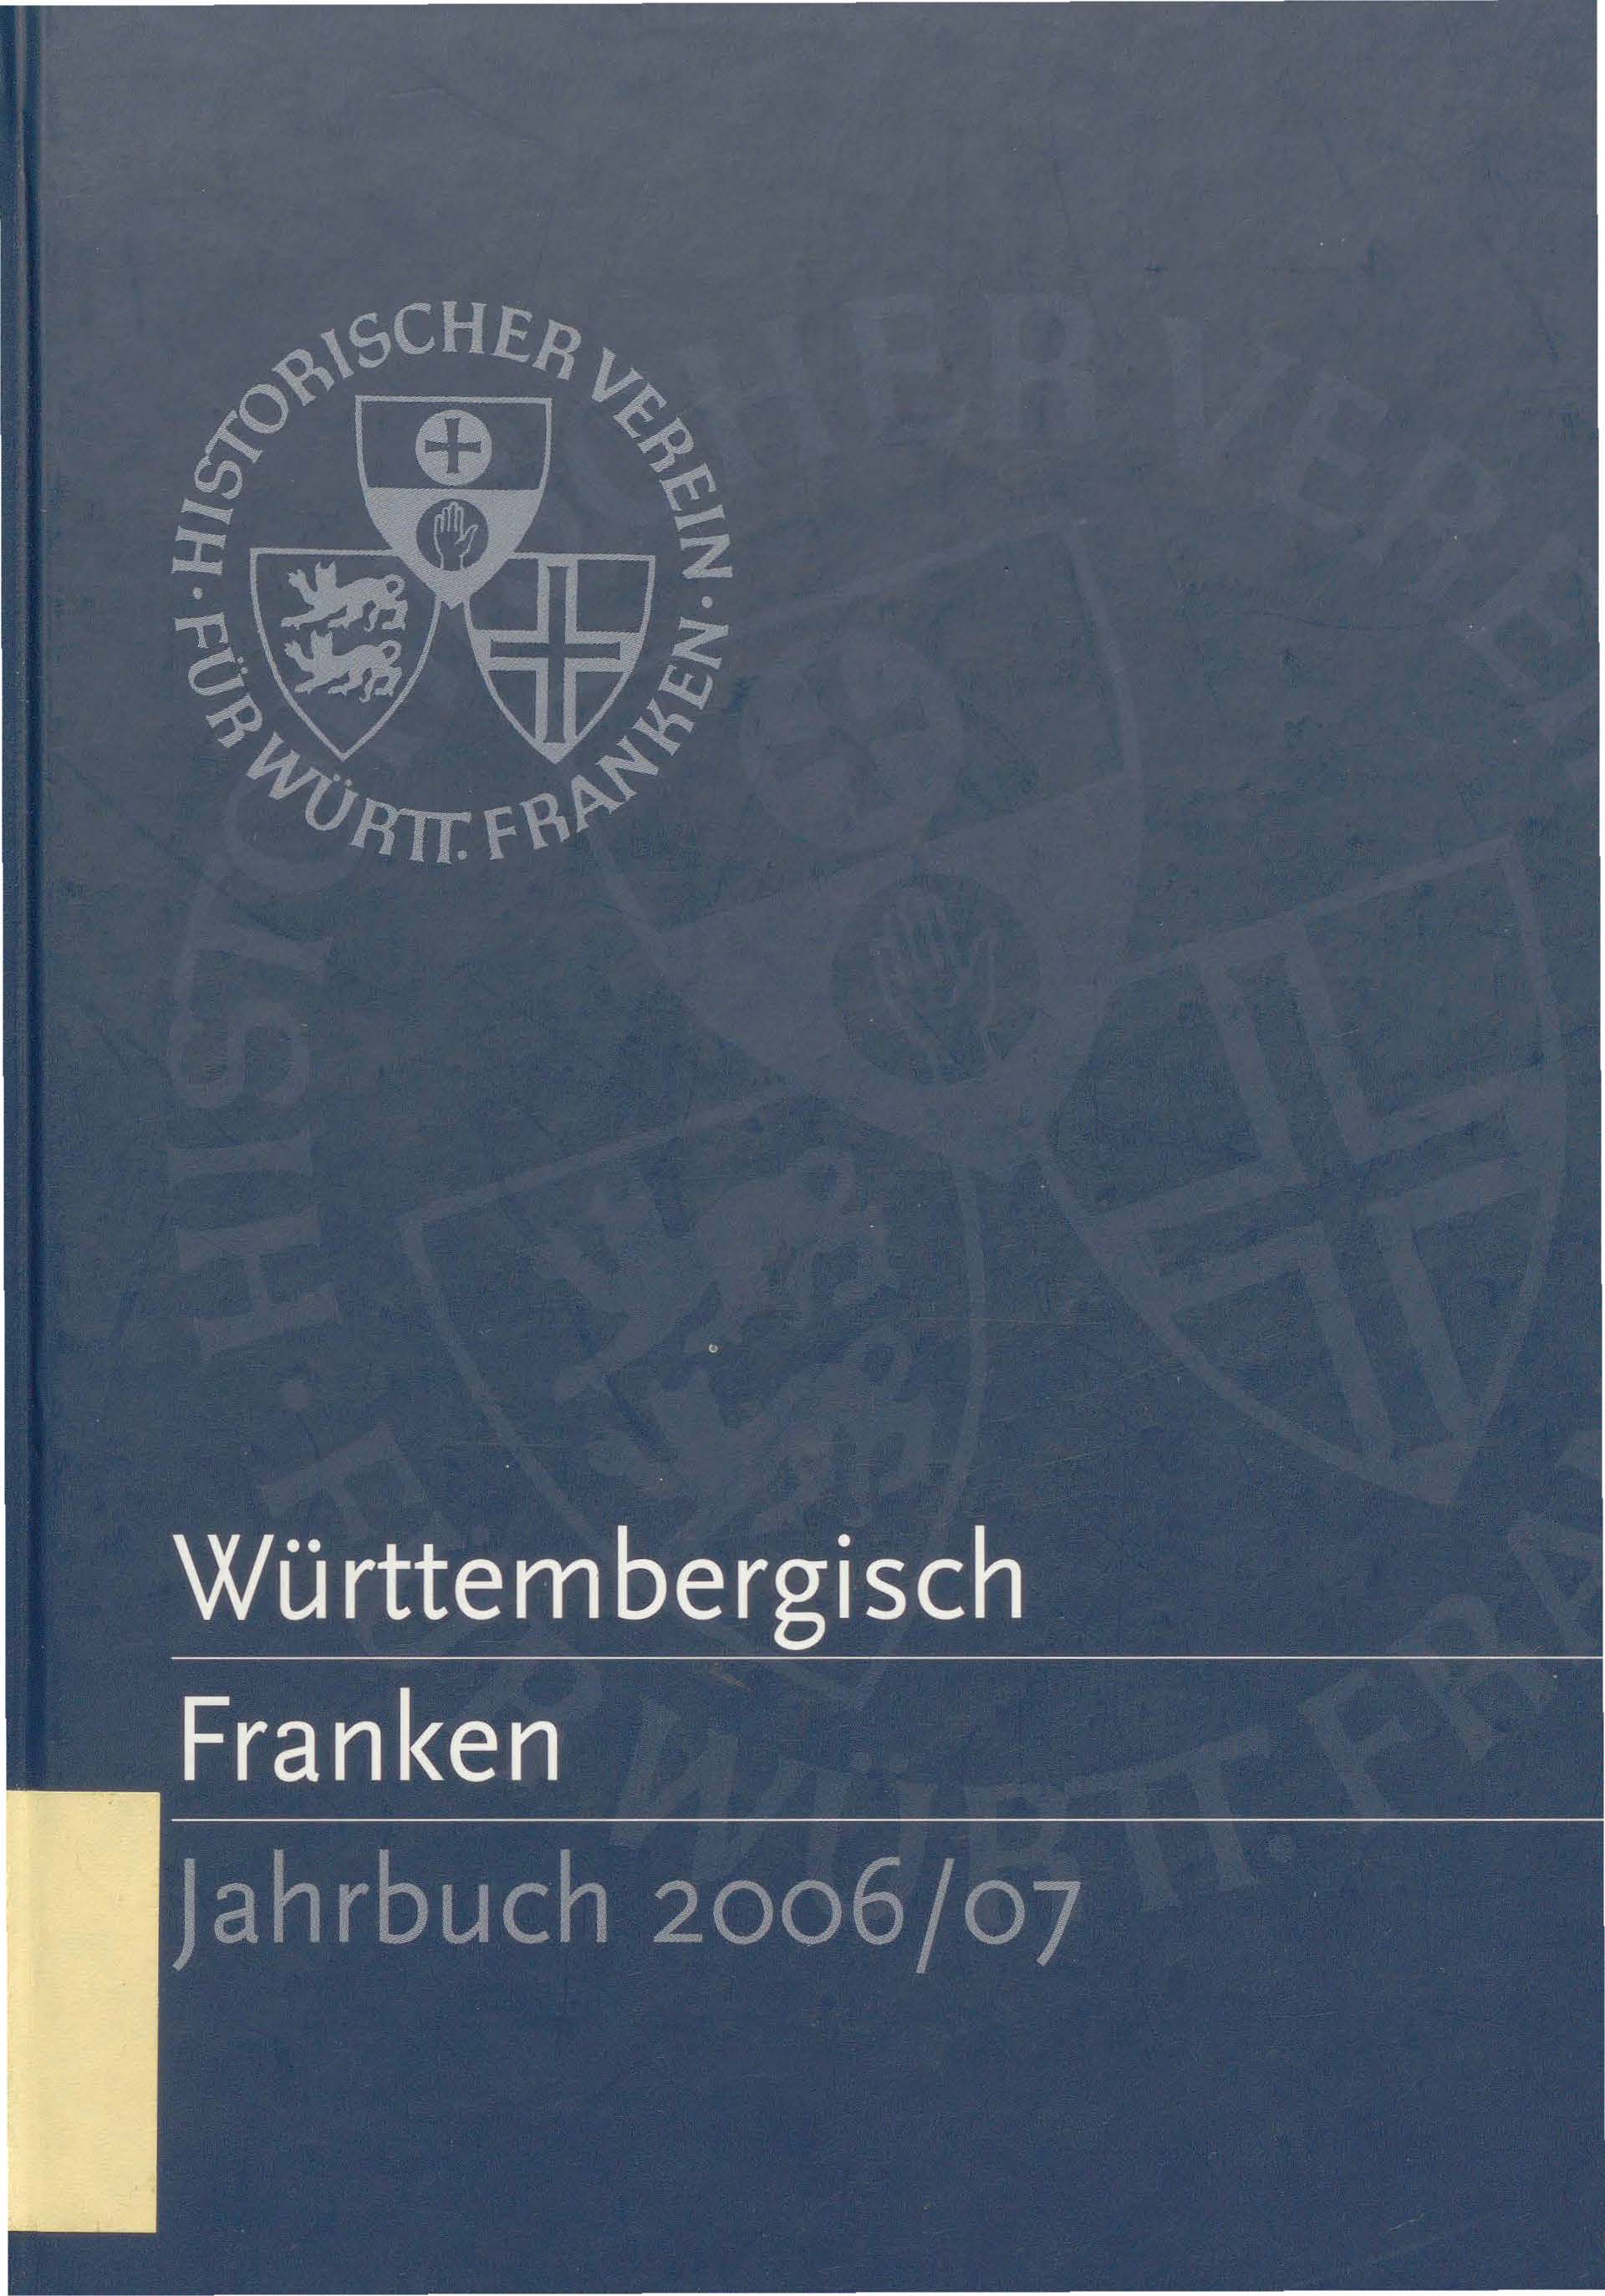                     Ansehen Nr. 90/91 (2006): Württembergisch Franken
                